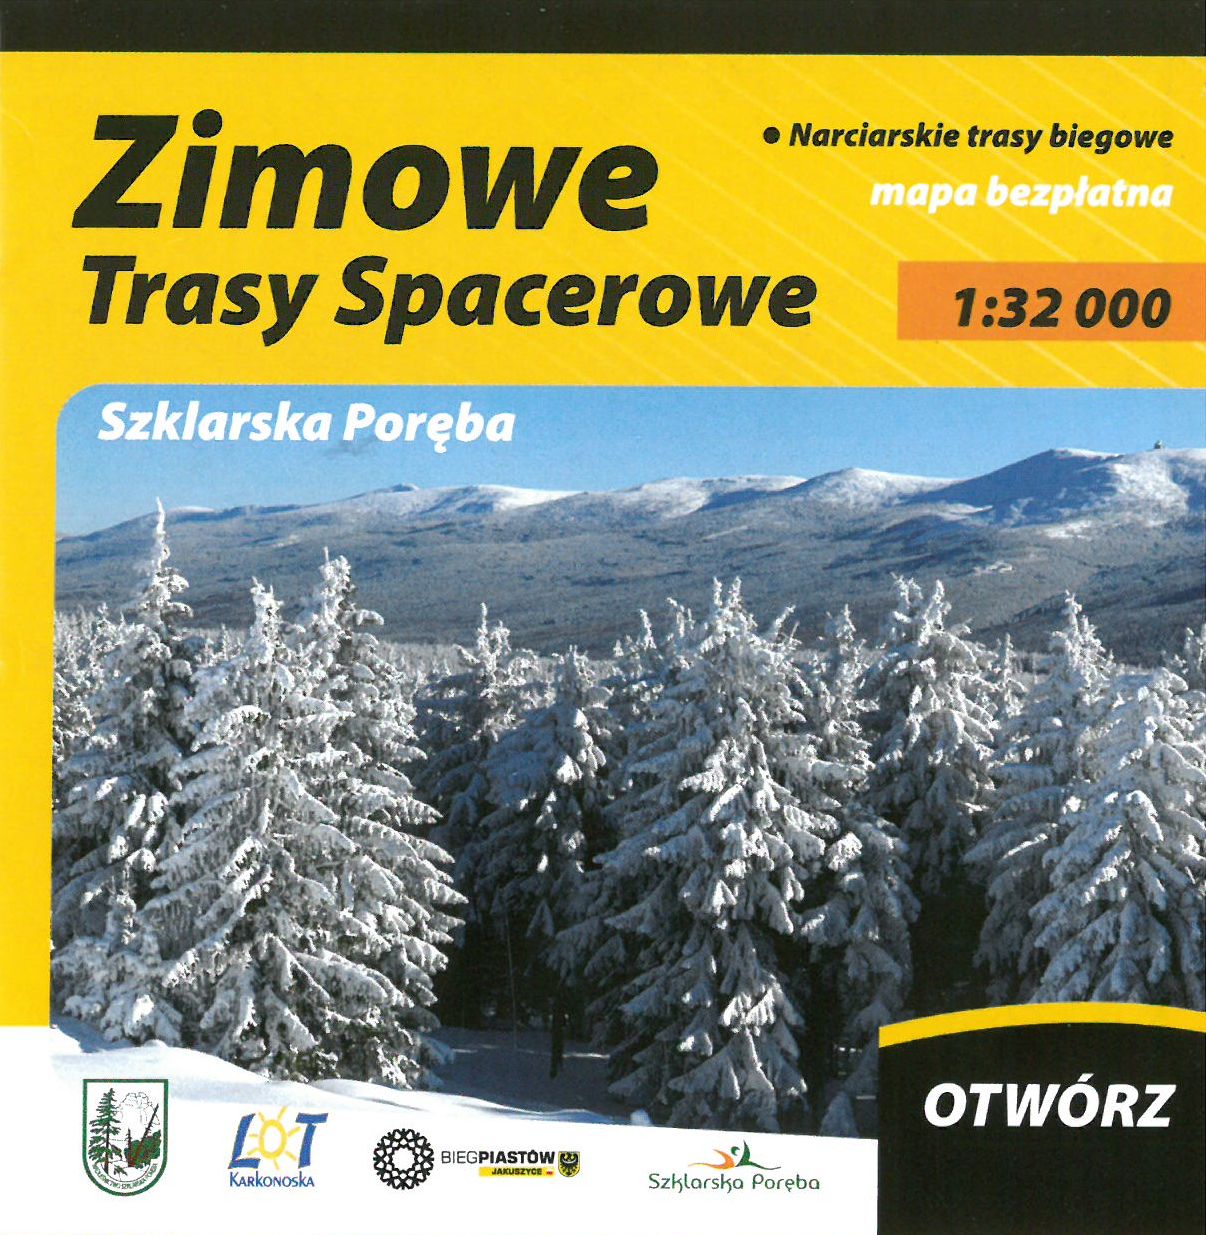 Okładka mapy ZIMOWE TRASY SPACEROWE przedstawiająca Karkonosze w zimowej szacie i ozdobne elementy graficzne